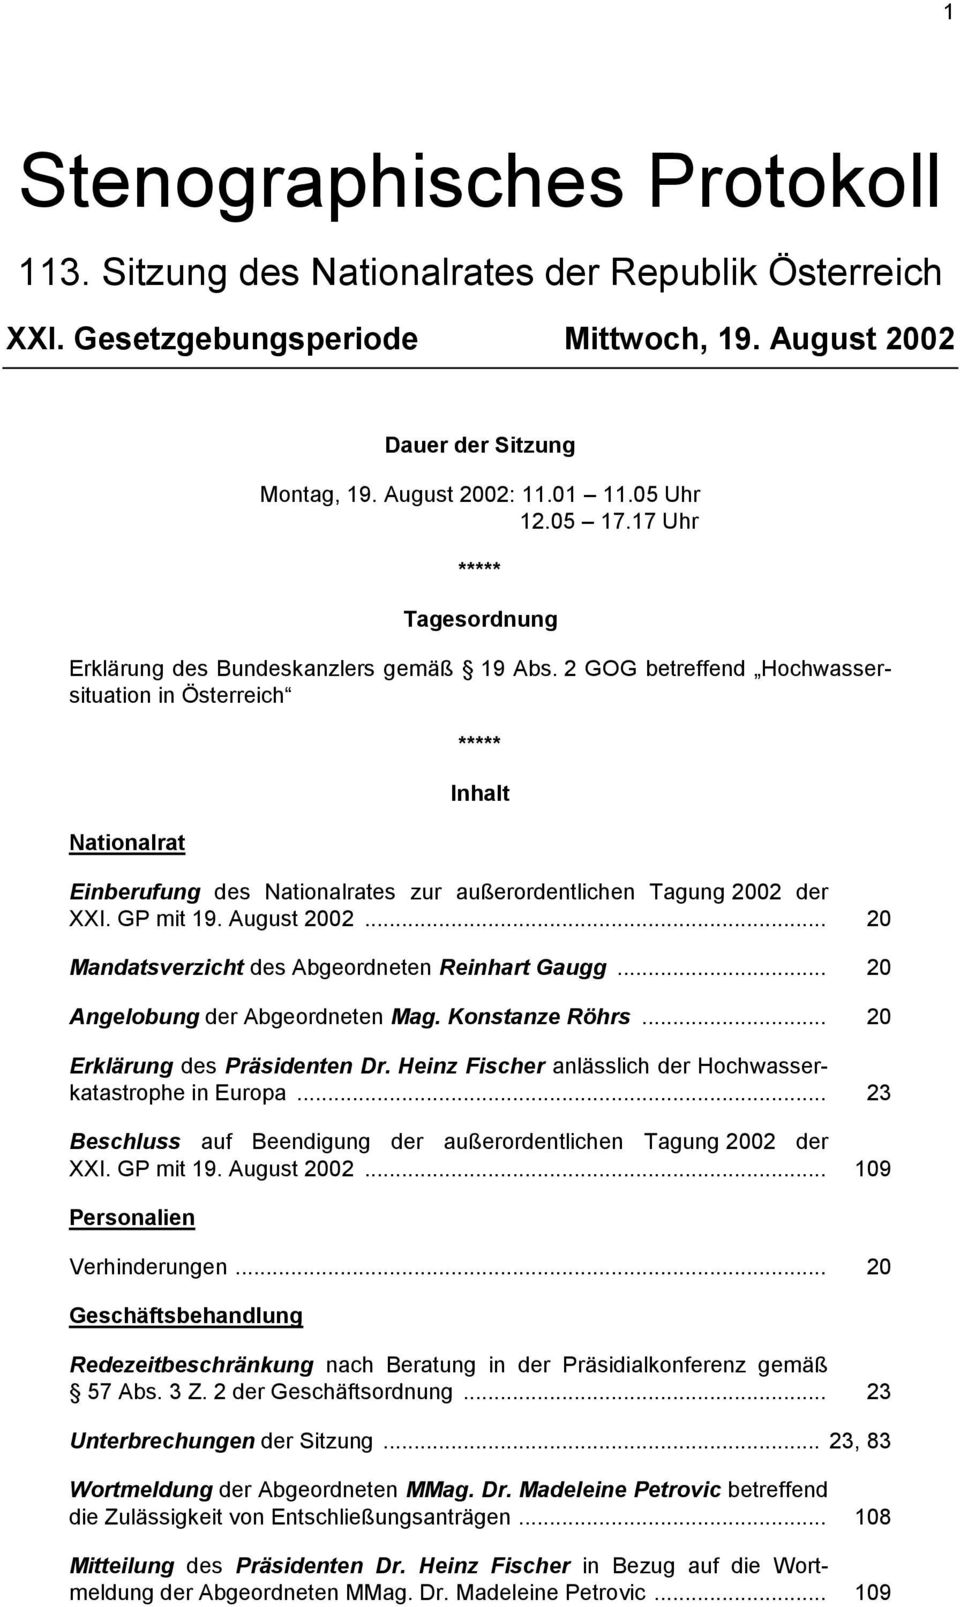 2 GOG betreffend Hochwassersituation in Österreich Nationalrat ***** Inhalt Einberufung des Nationalrates zur außerordentlichen Tagung 2002 der XXI. GP mit 19. August 2002.